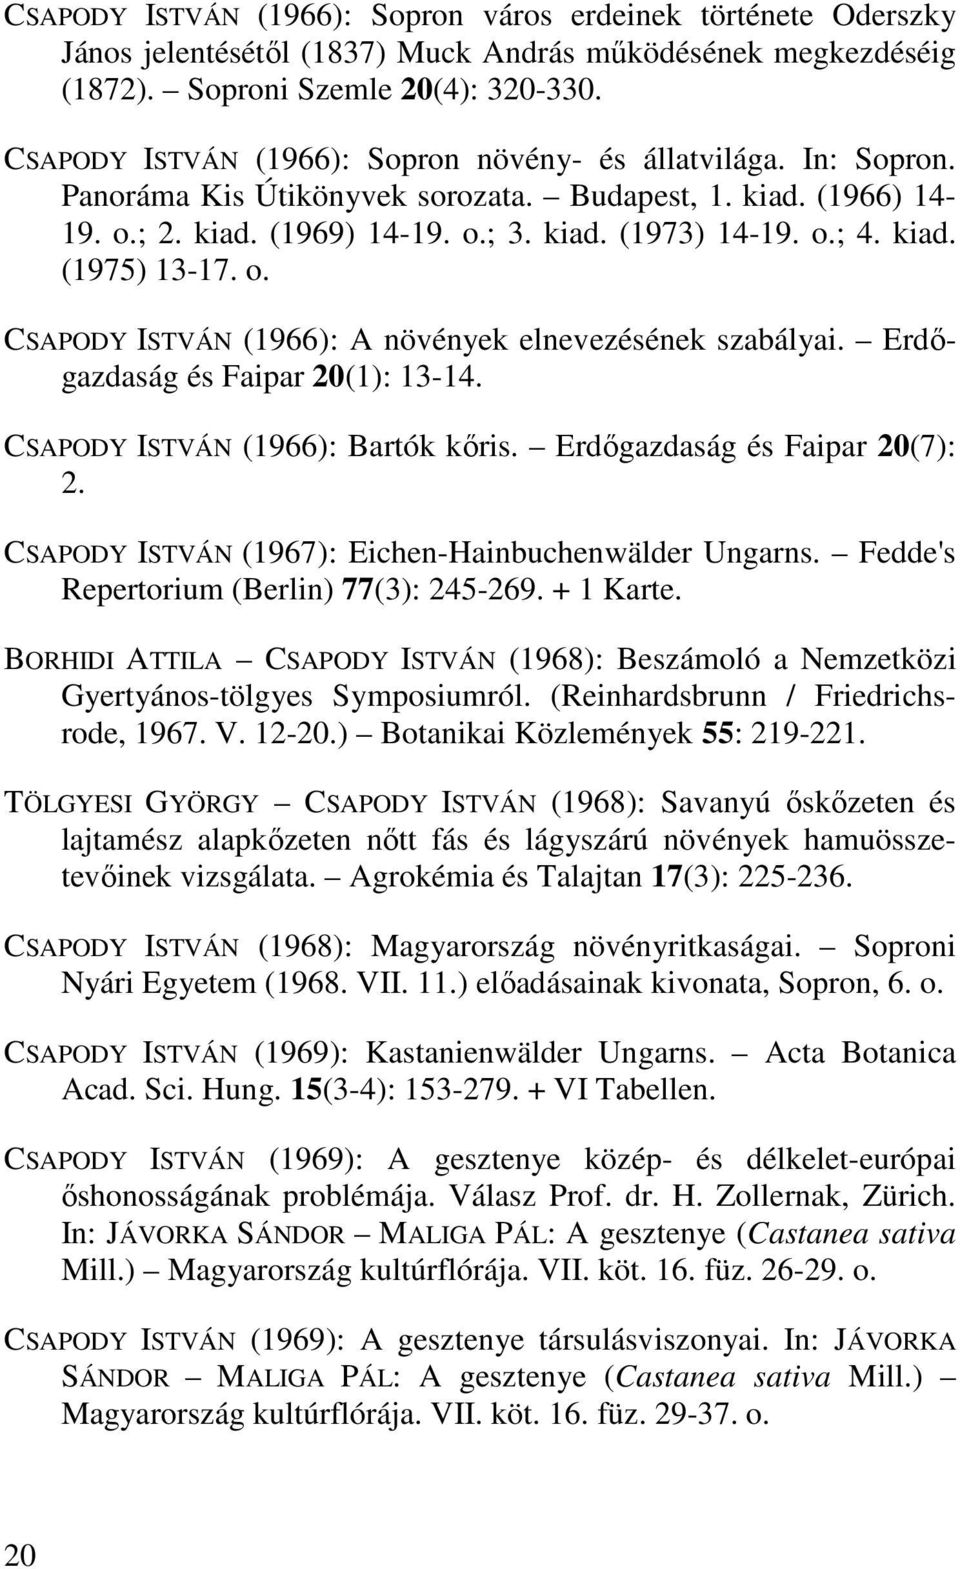 o. CSAPODY ISTVÁN (1966): A növények elnevezésének szabályai. Erdıgazdaság és Faipar 20(1): 13-14. CSAPODY ISTVÁN (1966): Bartók kıris. Erdıgazdaság és Faipar 20(7): 2.